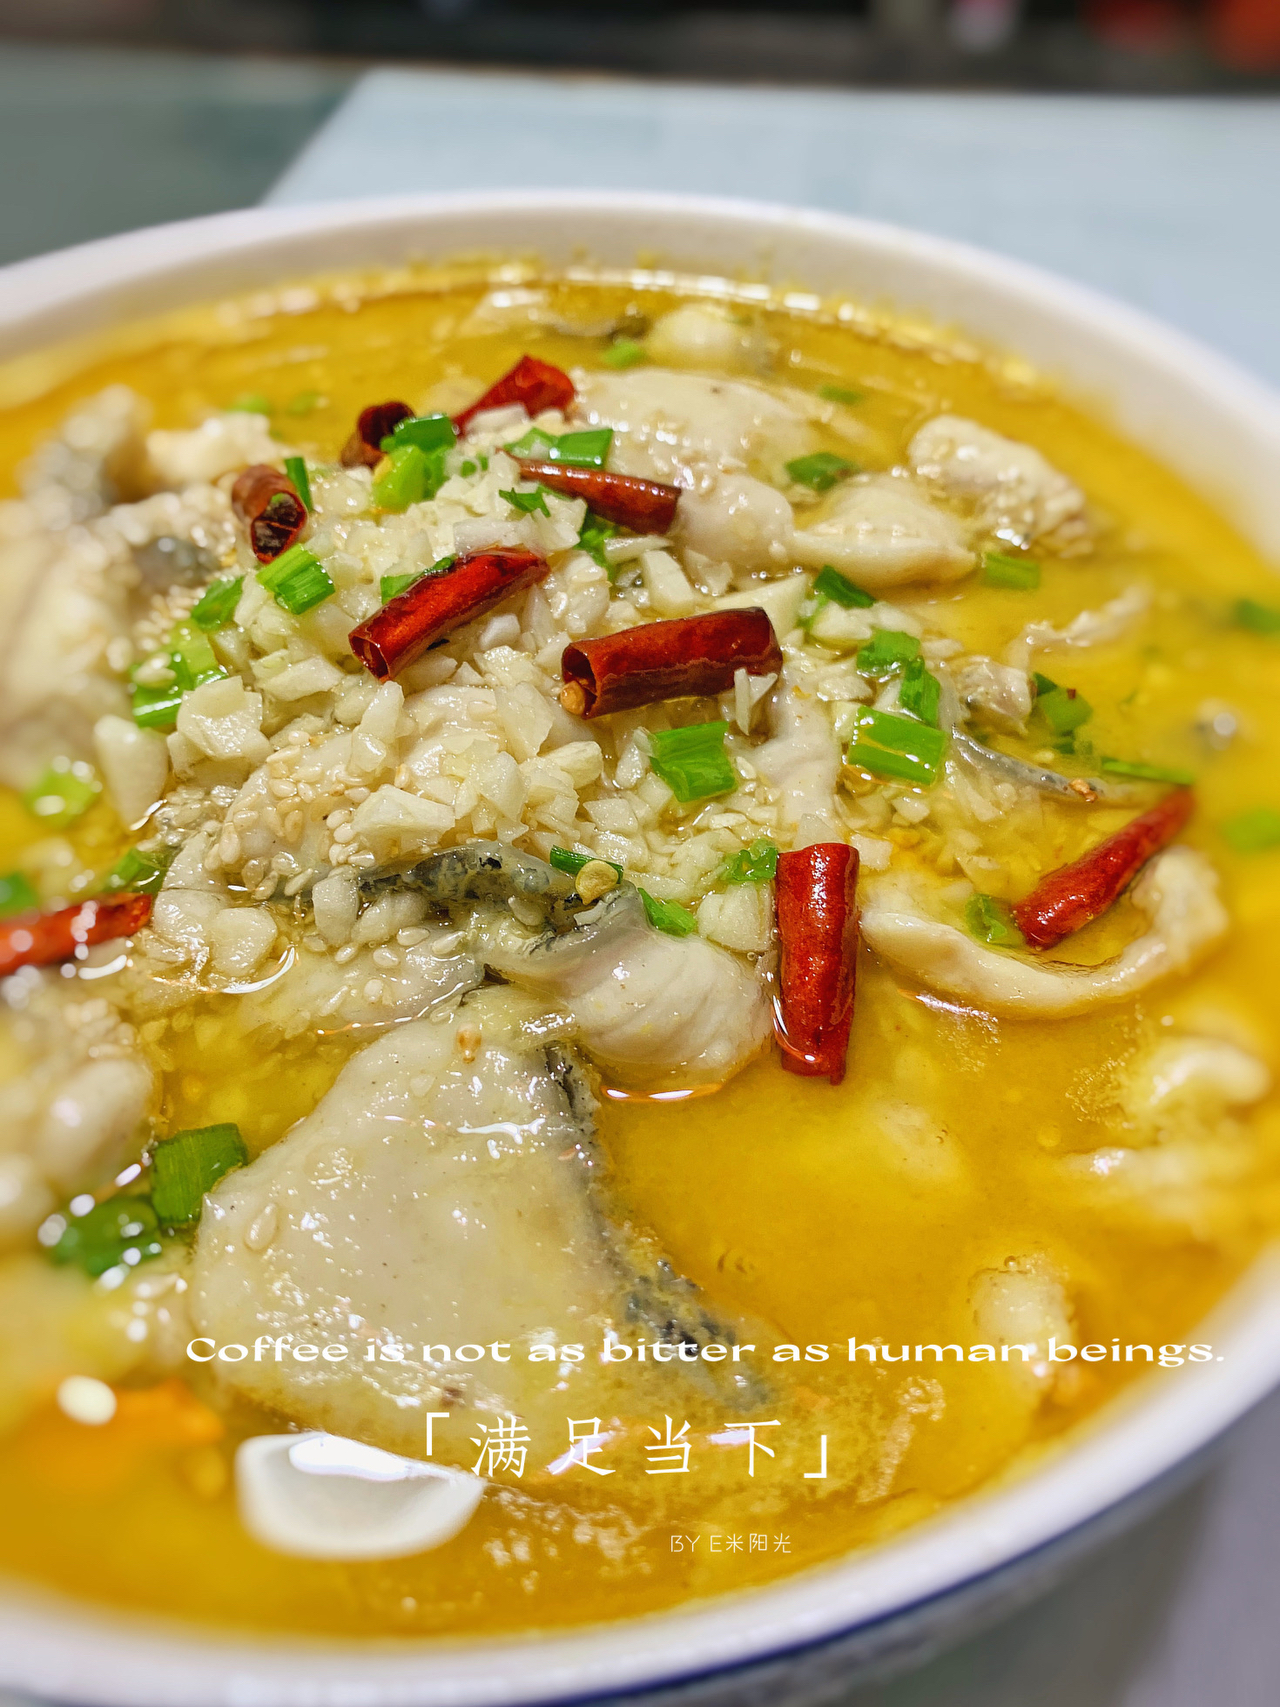 金牌酸菜鱼锅丨酸菜鱼和火锅的完美结合